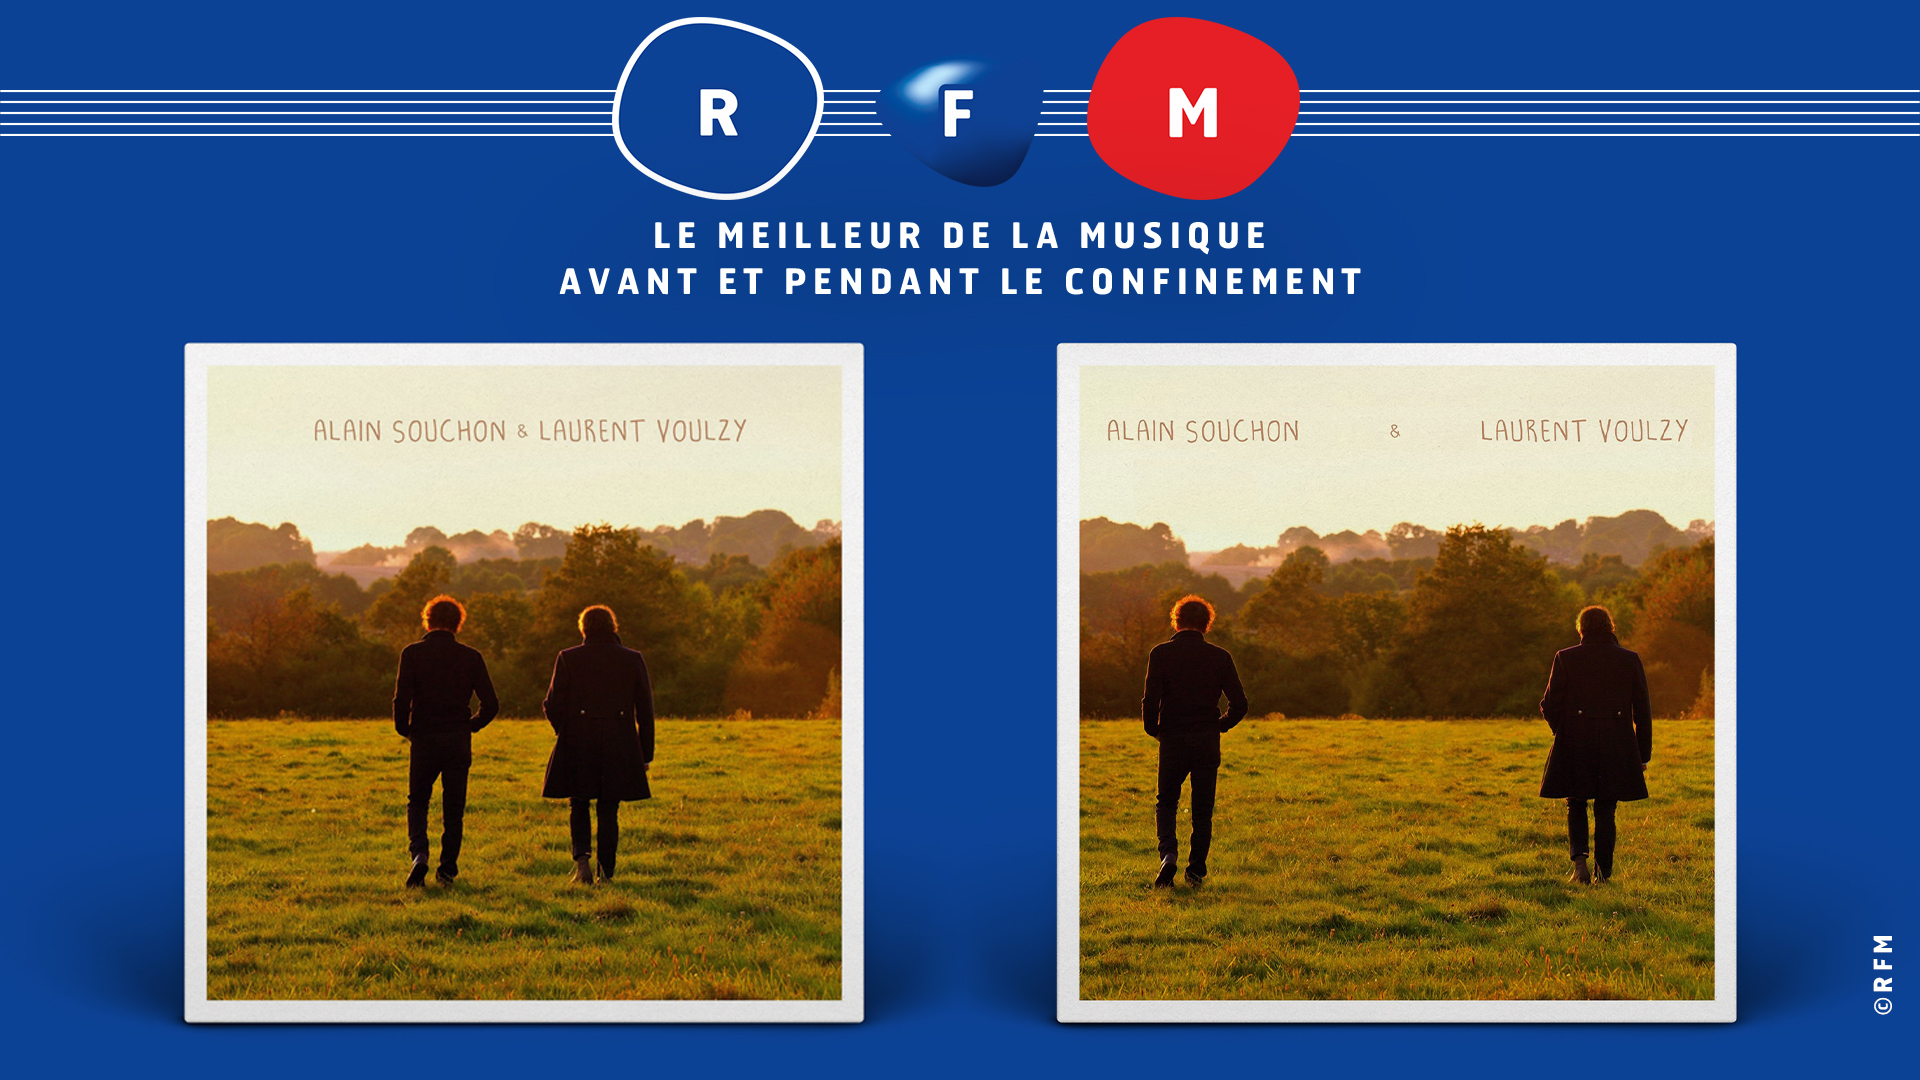 RFM détourne les pochettes d'album de ses artistes